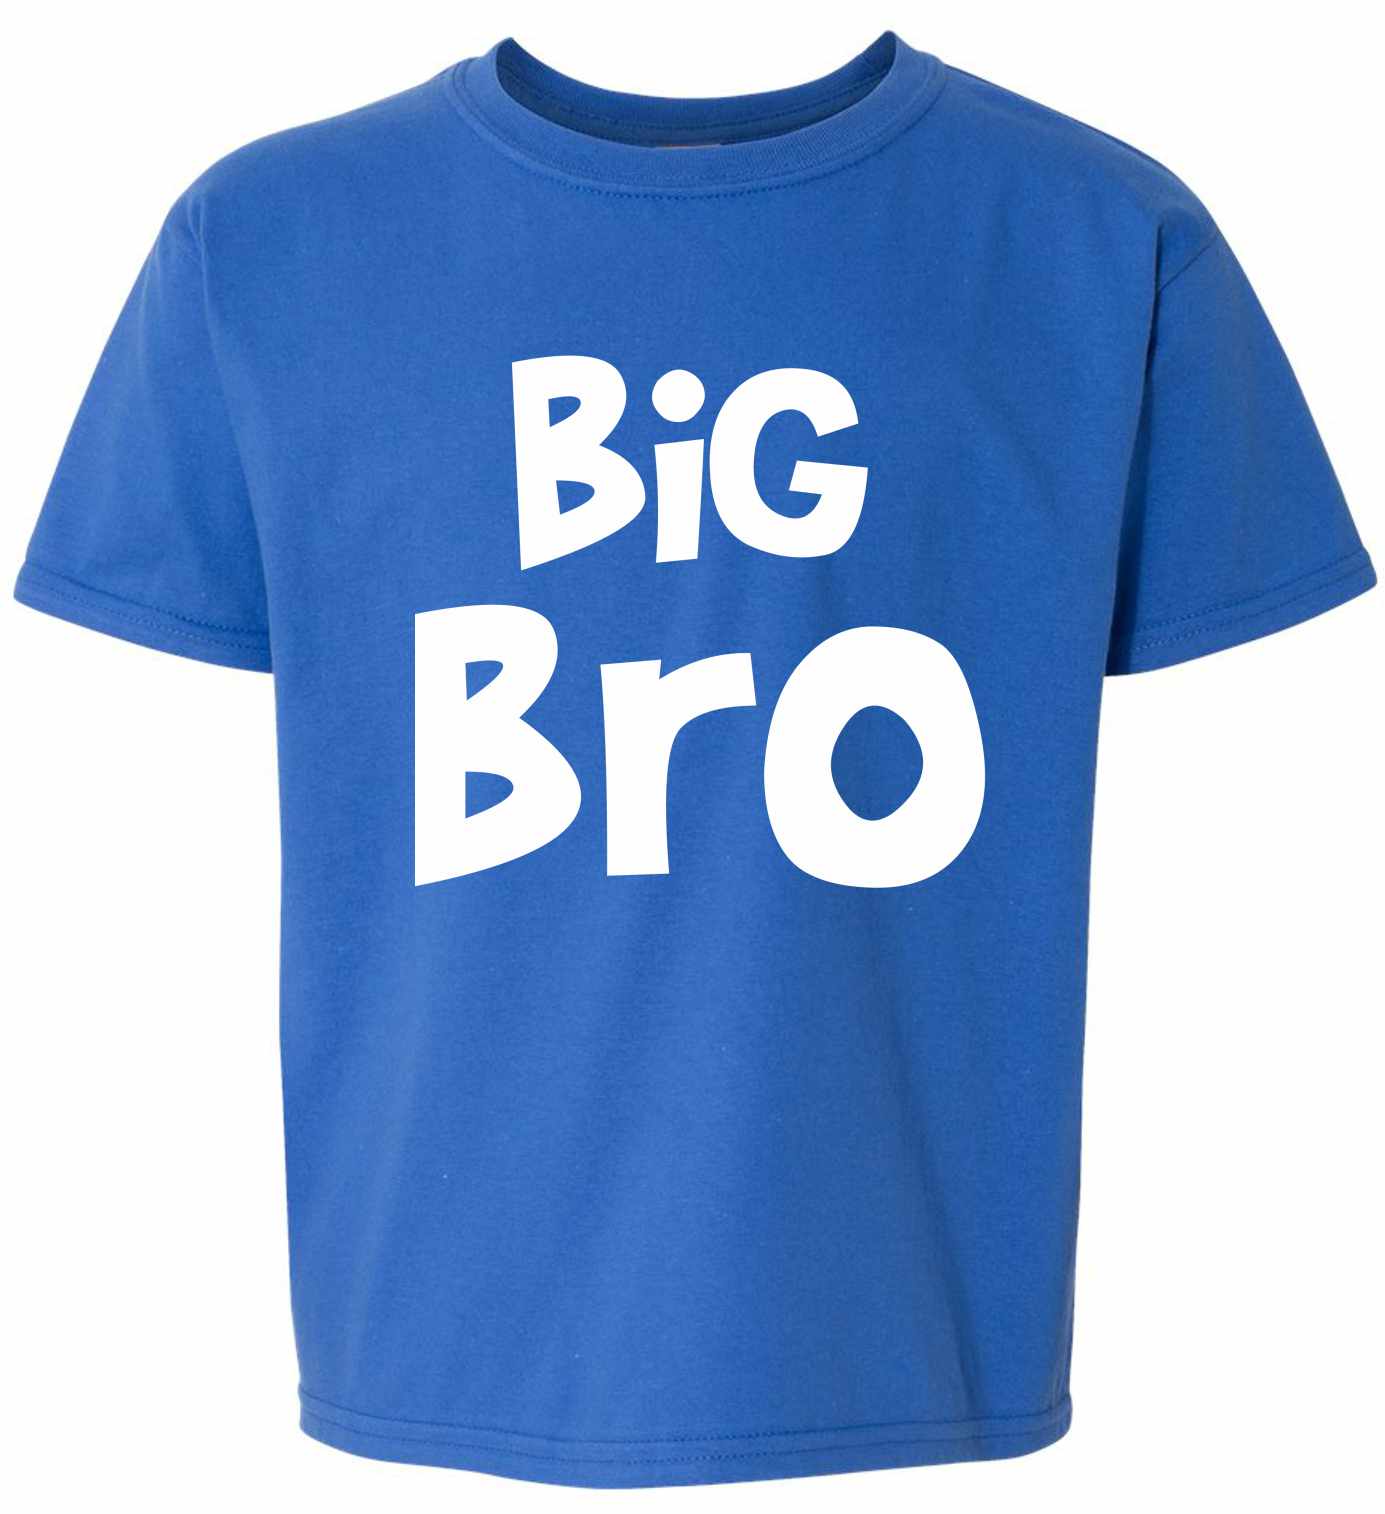 Big Bro on Kids T-Shirt (#1141-201)